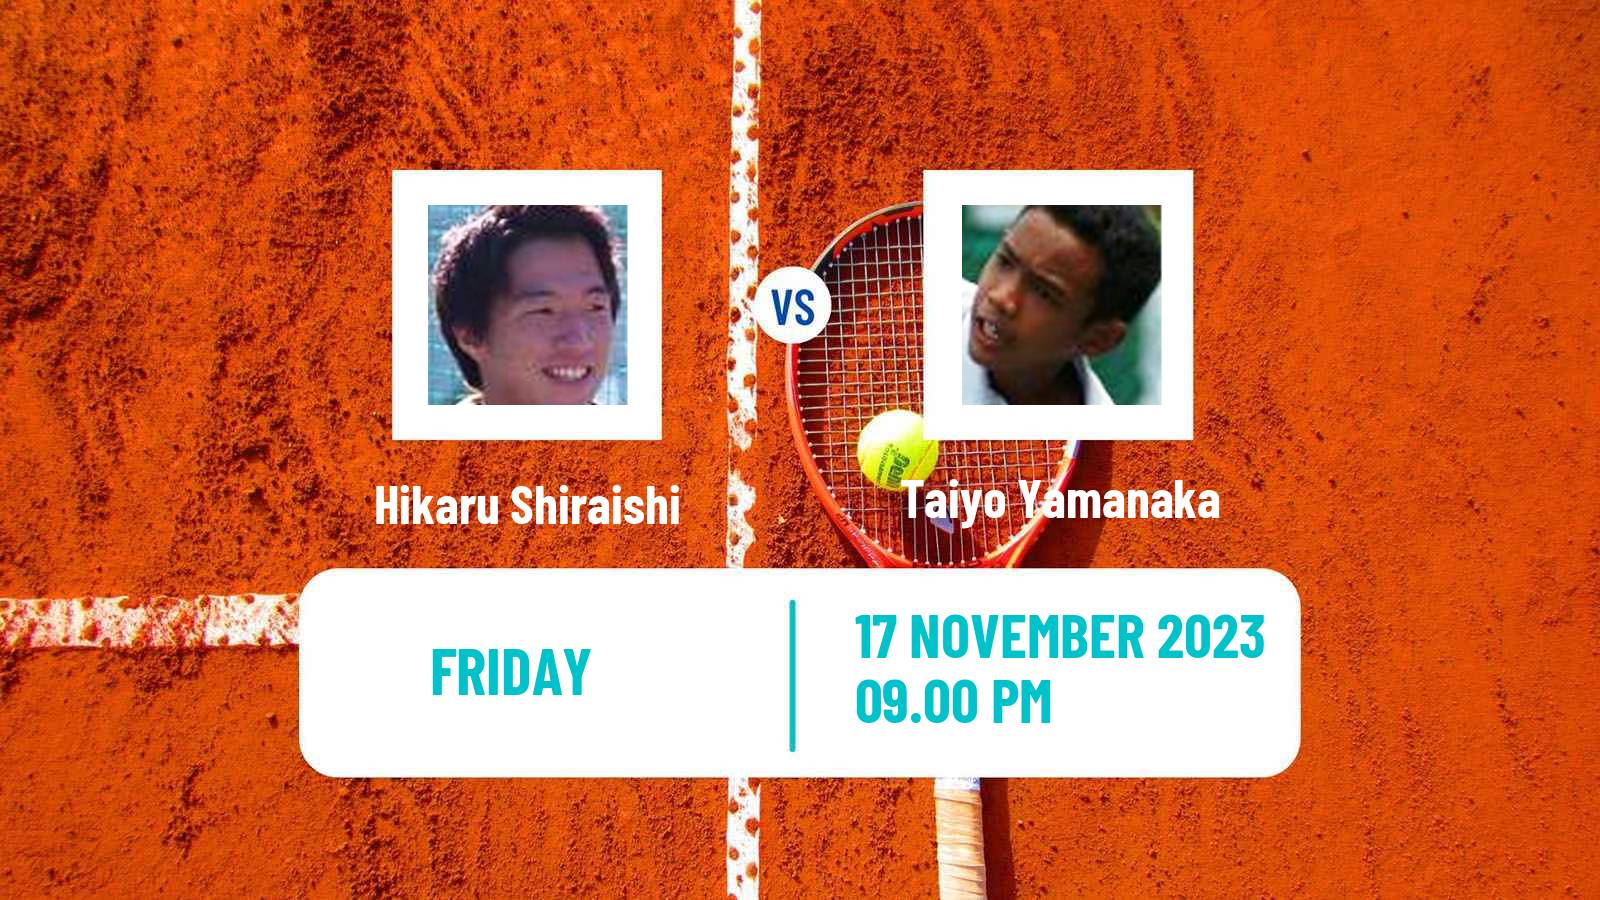 Tennis ITF M15 Kuching Men Hikaru Shiraishi - Taiyo Yamanaka